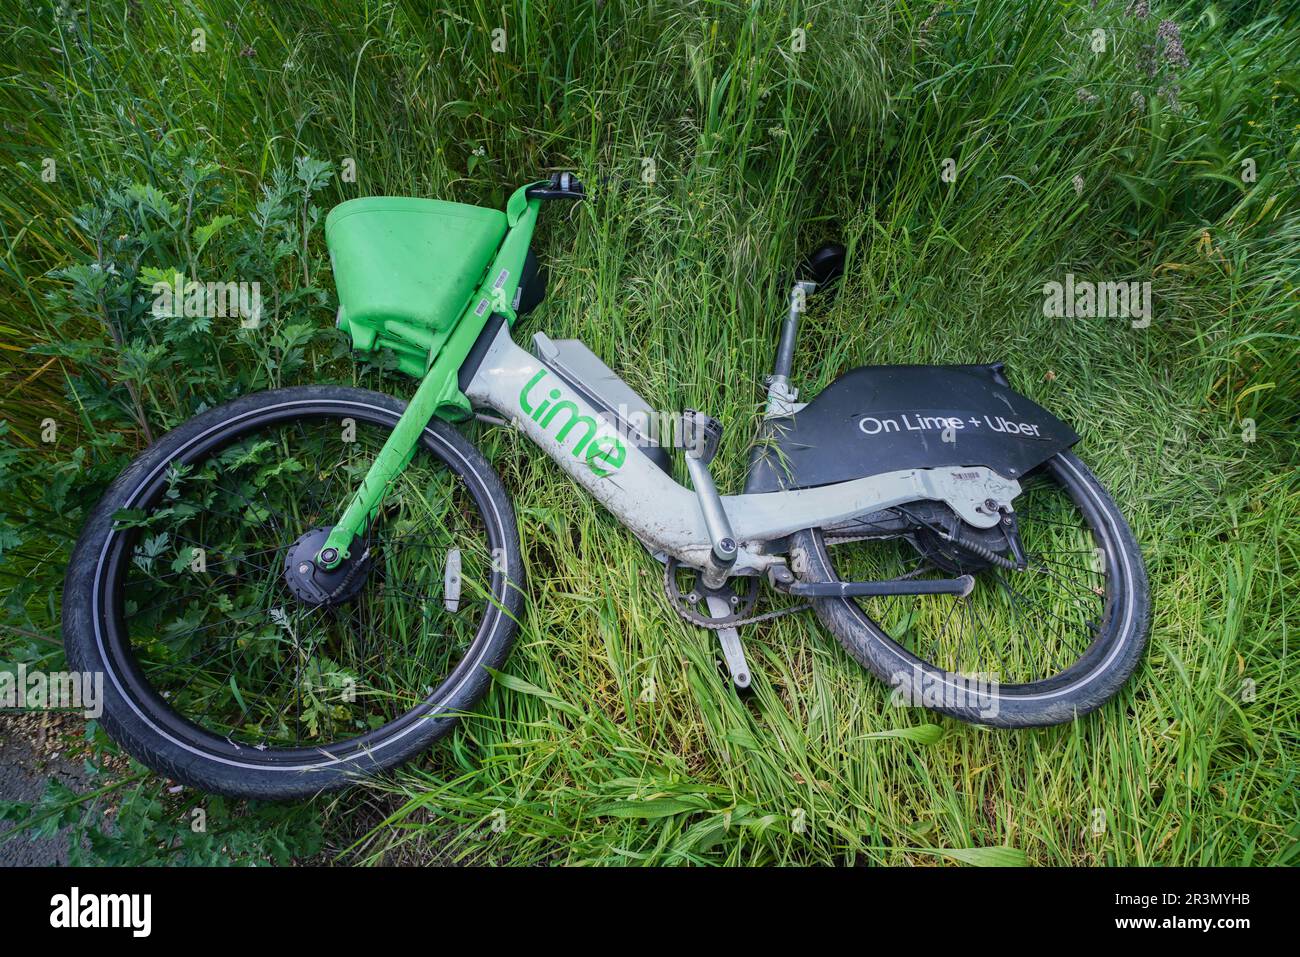 Una bicicletta elettrica Lime Uber abbandonata a Wimbledon Common, Londra, Regno Unito Foto Stock